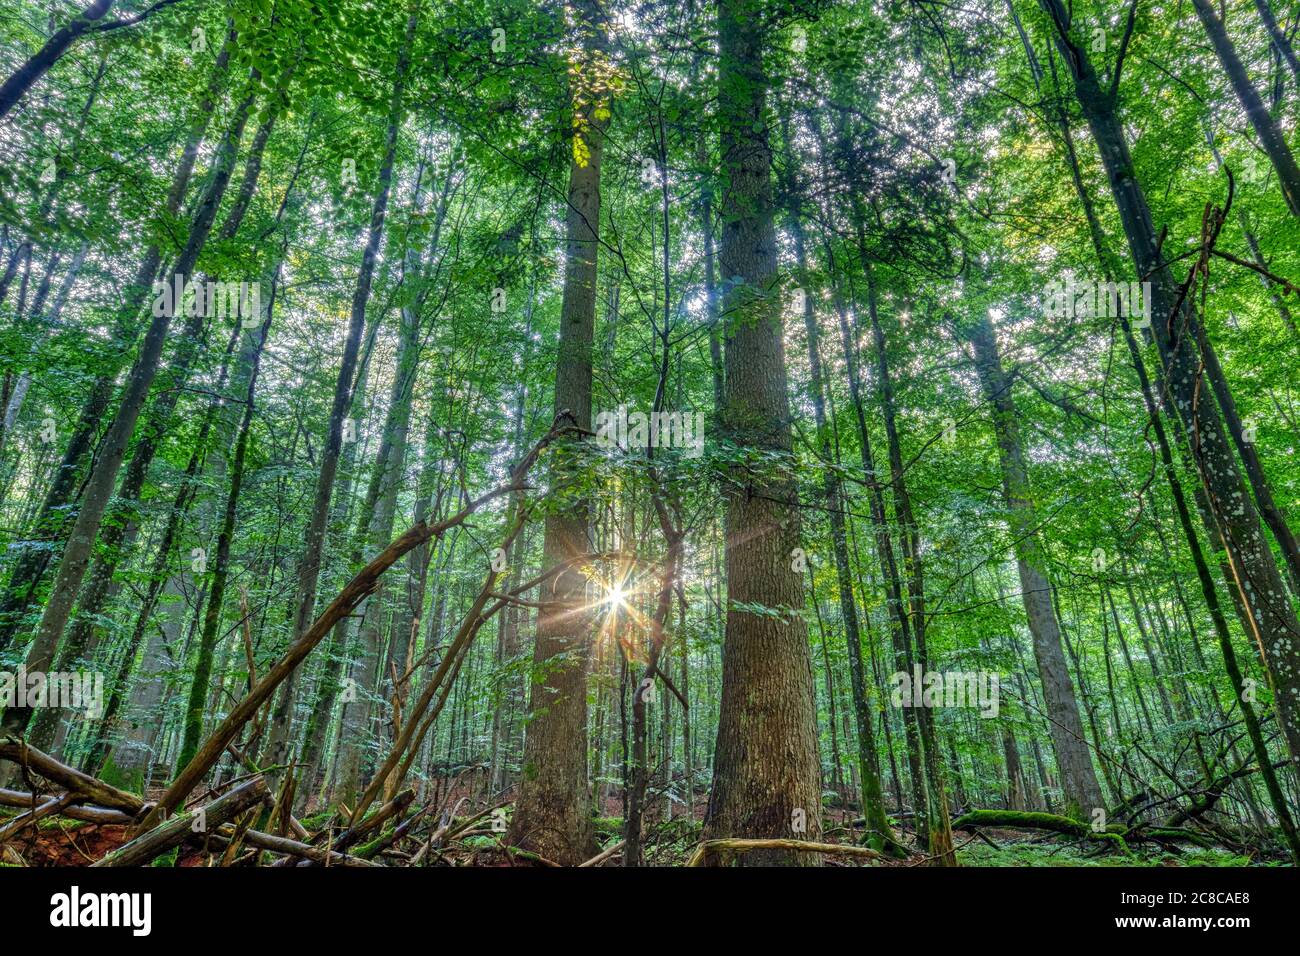 Ruhiger Sonnenaufgang im Urwald der Mittelsteiguette, einem ursprünglichen Baumgebiet im bayerischen Wald, wo die natürliche Wachstumszikel stattfindet Stockfoto